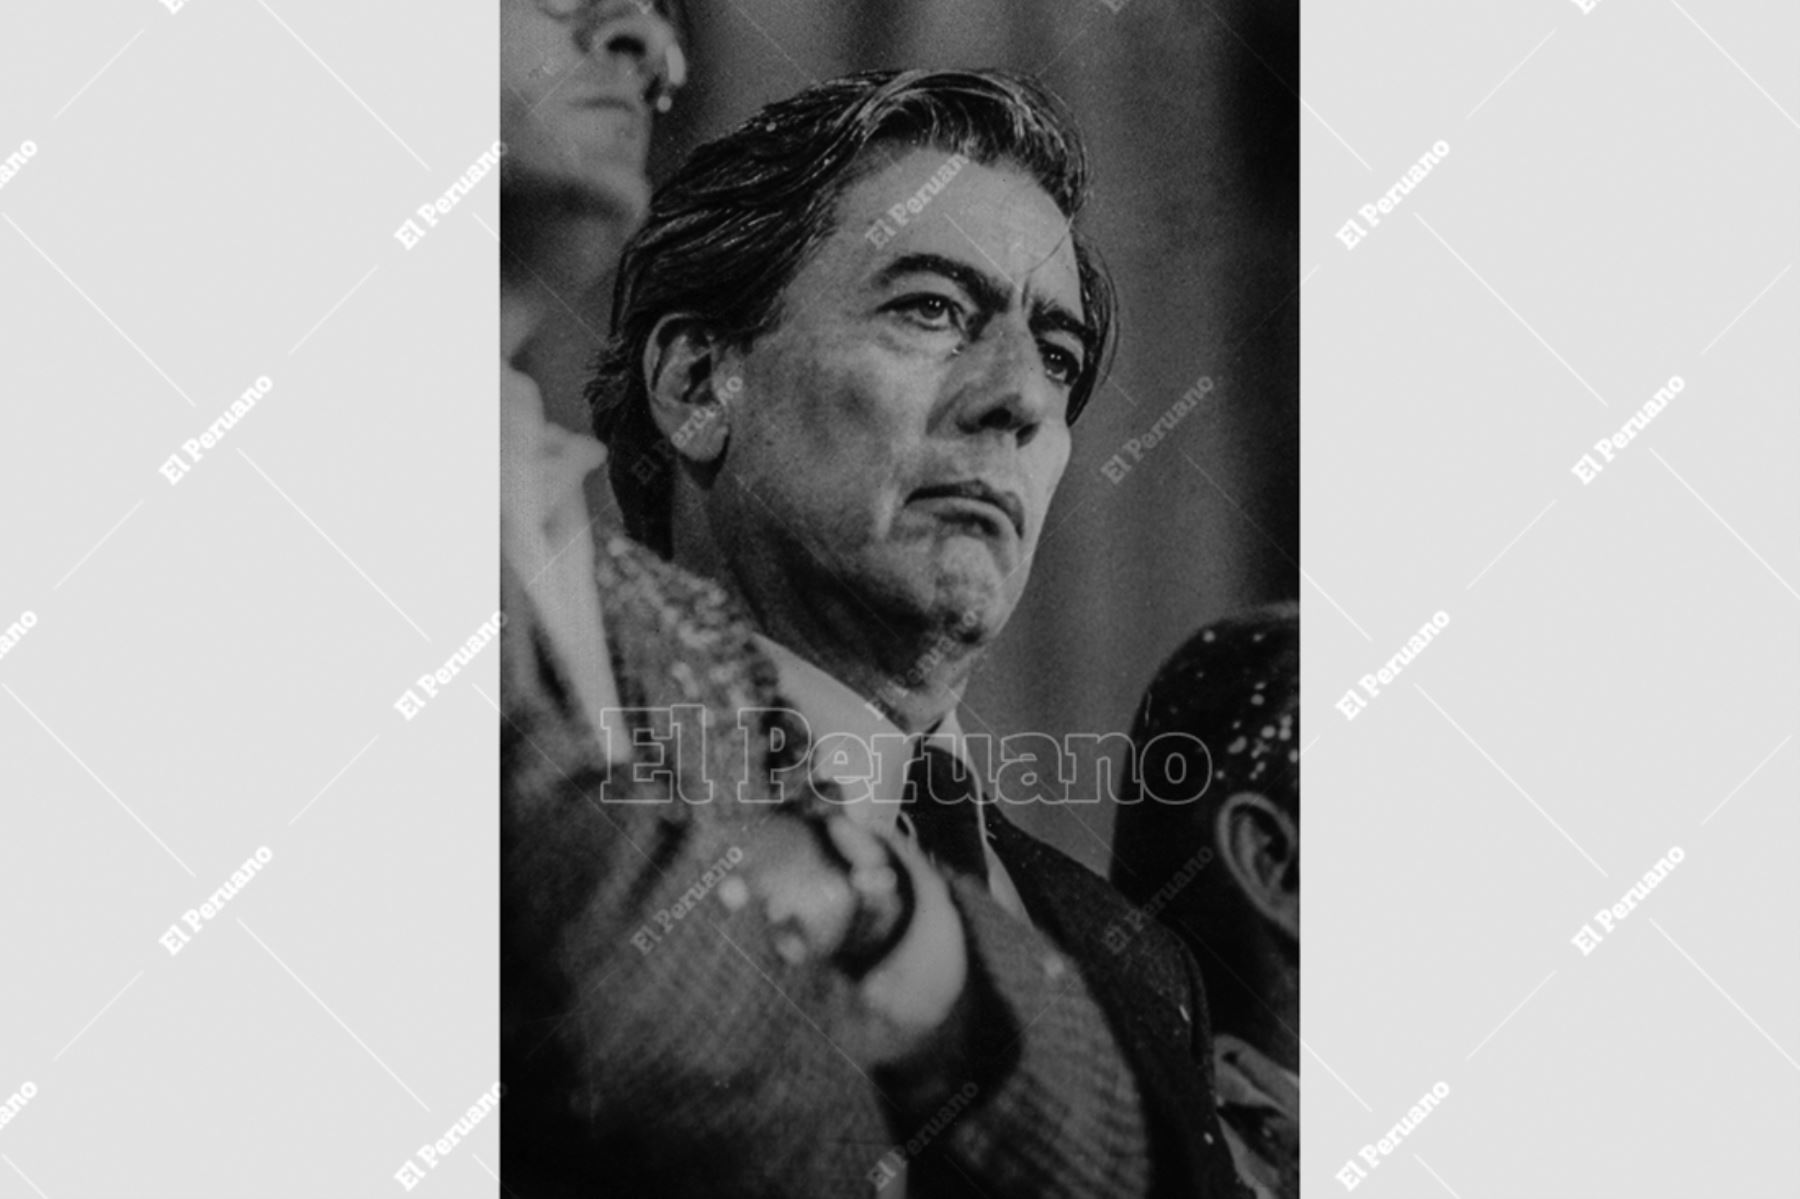 Lima - 21 agosto 1987 / El escritor Mario Vargas Llosa encabezó en la plaza San Martín un multitudinario mitin denominado "Encuentro por la Libertad"  en contra de la estatización de la banca. Foto: Archivo Histórico de El Peruano / Leoncio Mariscal